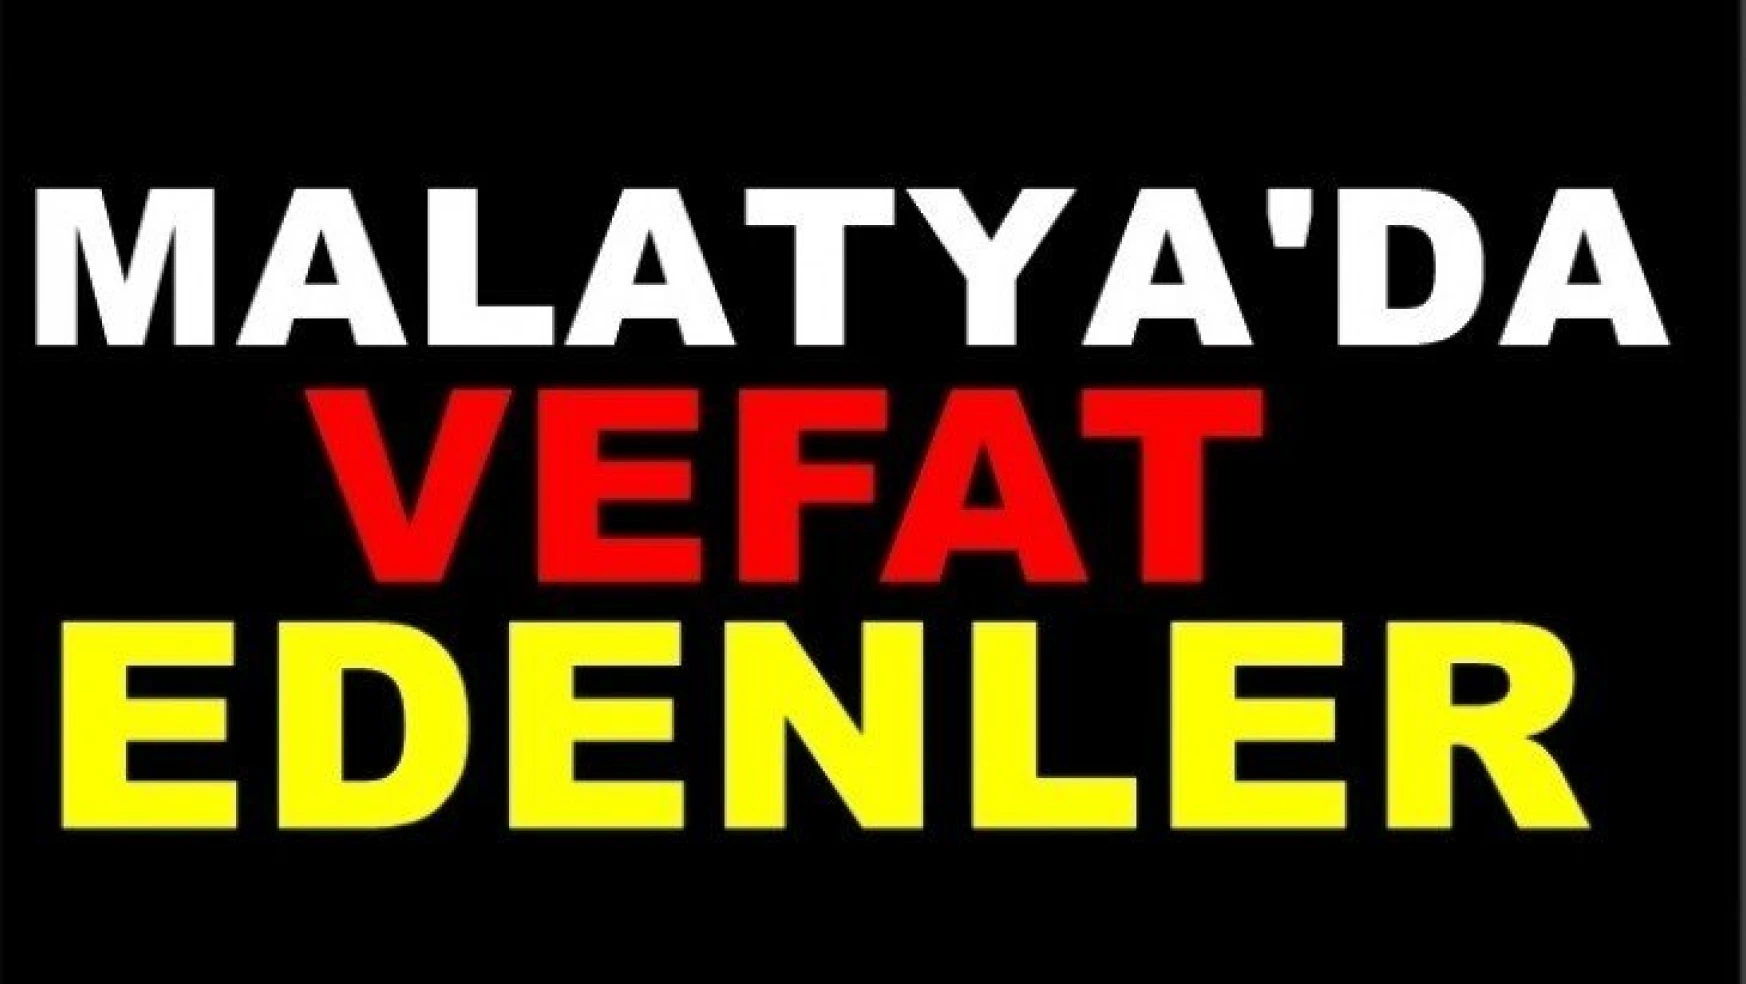 Malatya'da Bugün 23 Kişi Vefat Etti